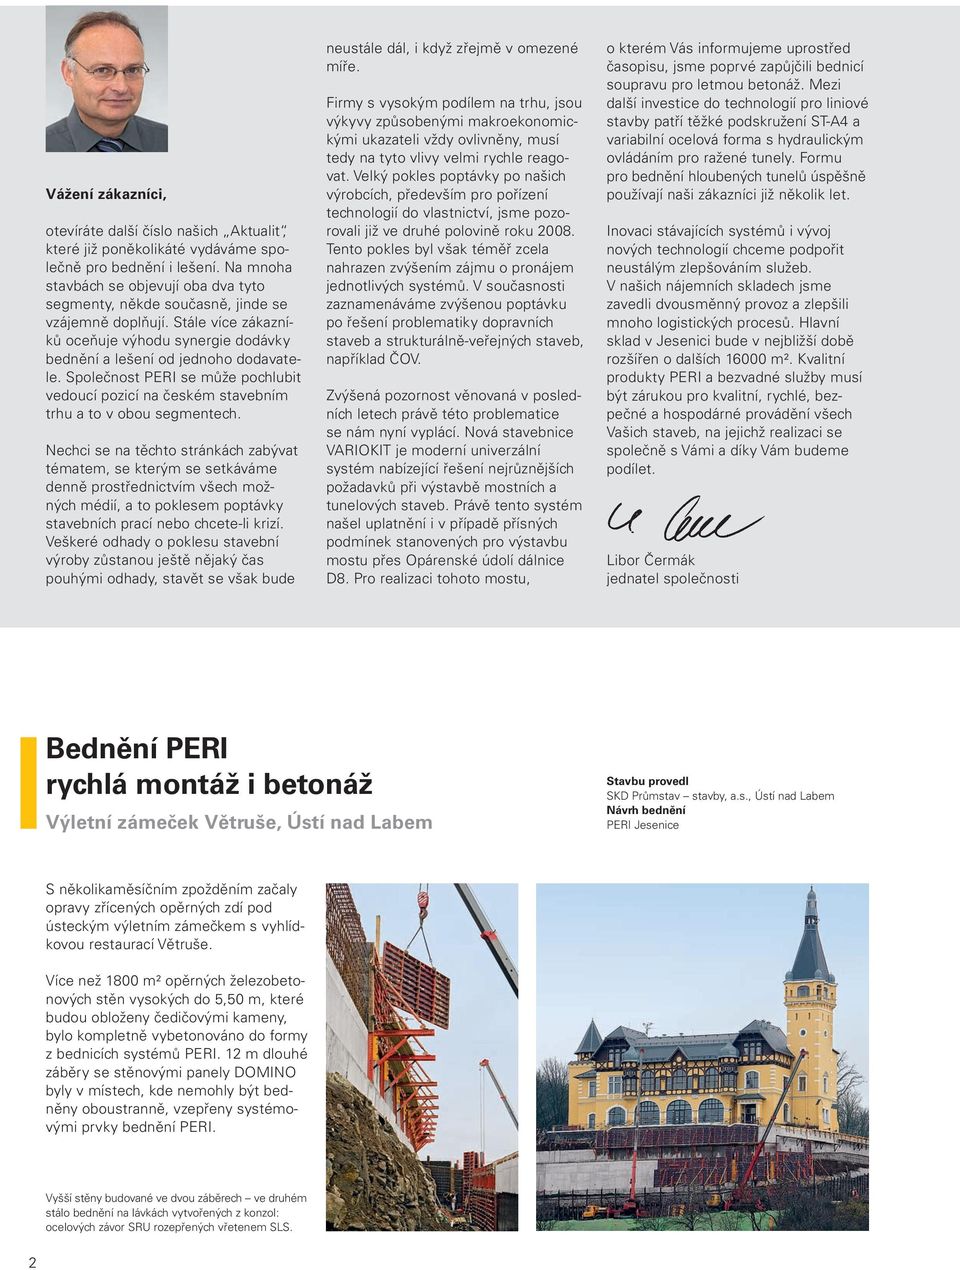 Společnost PERI se může pochlubit vedoucí pozicí na českém stavebním trhu a to v obou segmentech.